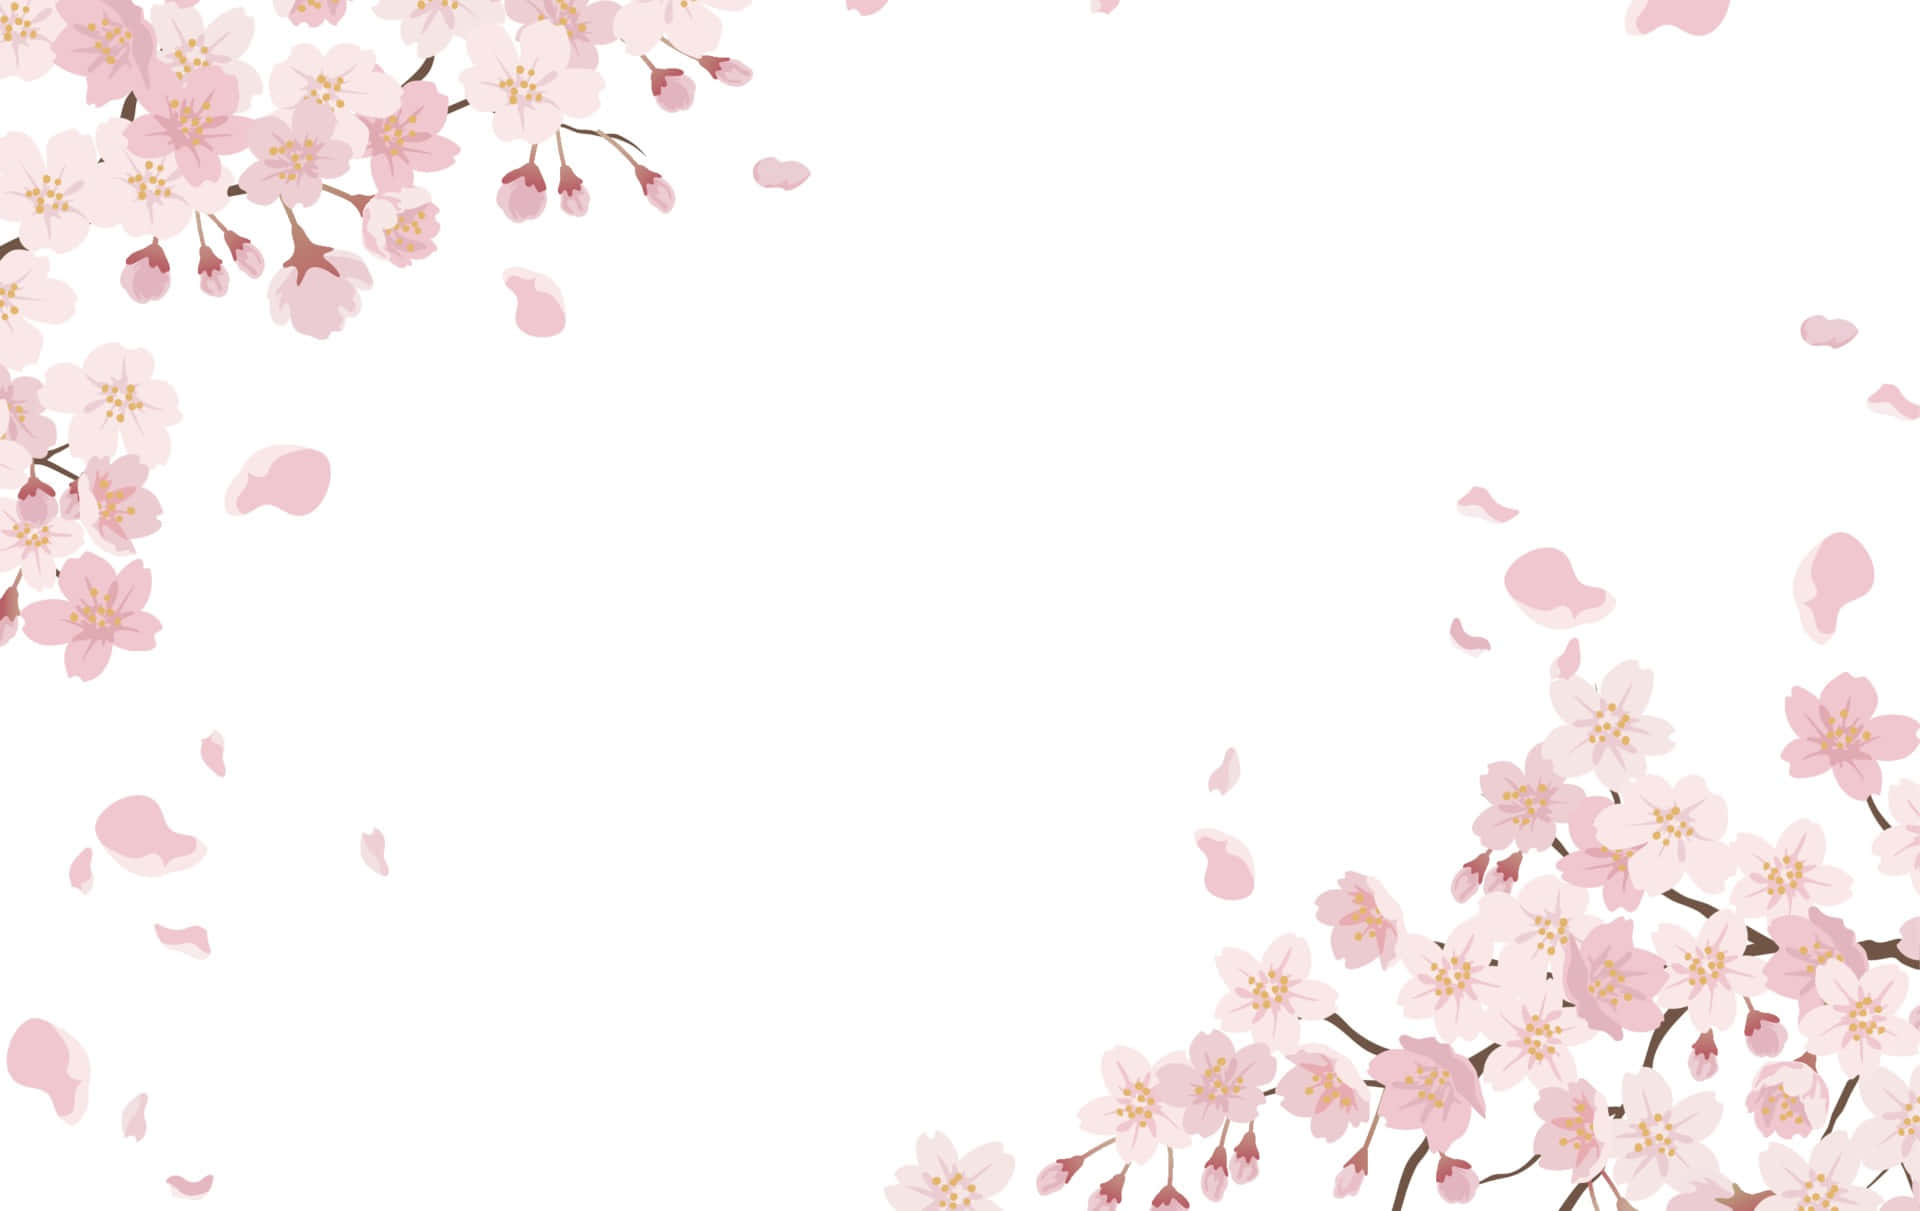 Nydsommeren Med En Sakura I Fuldt Flor.